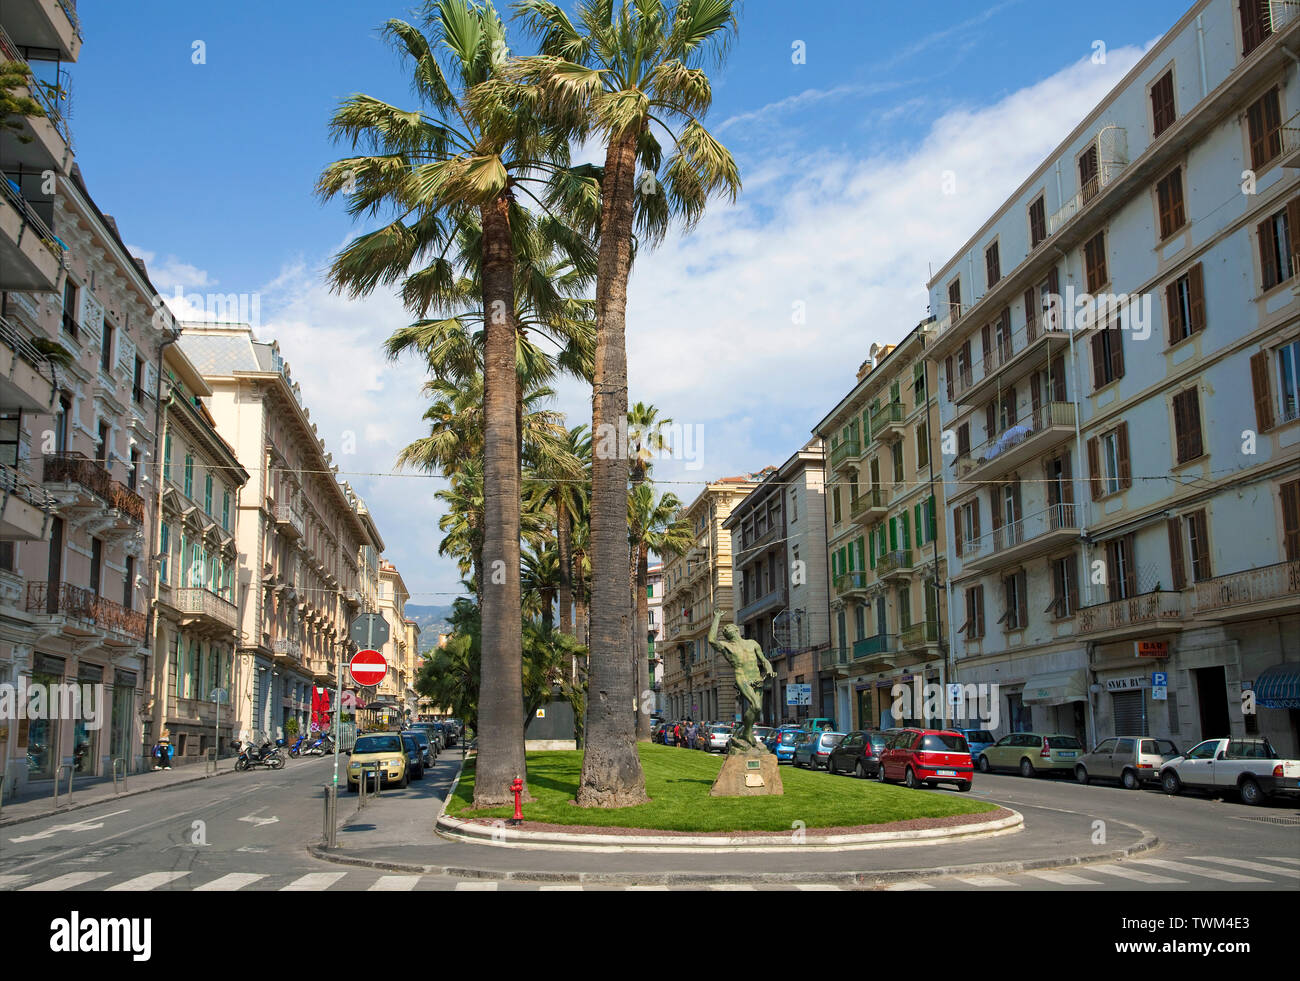 Vue sur la rue, et la rue du port, San Remo, ville portuaire sur la côte ligurienne, ligurie, italie Banque D'Images